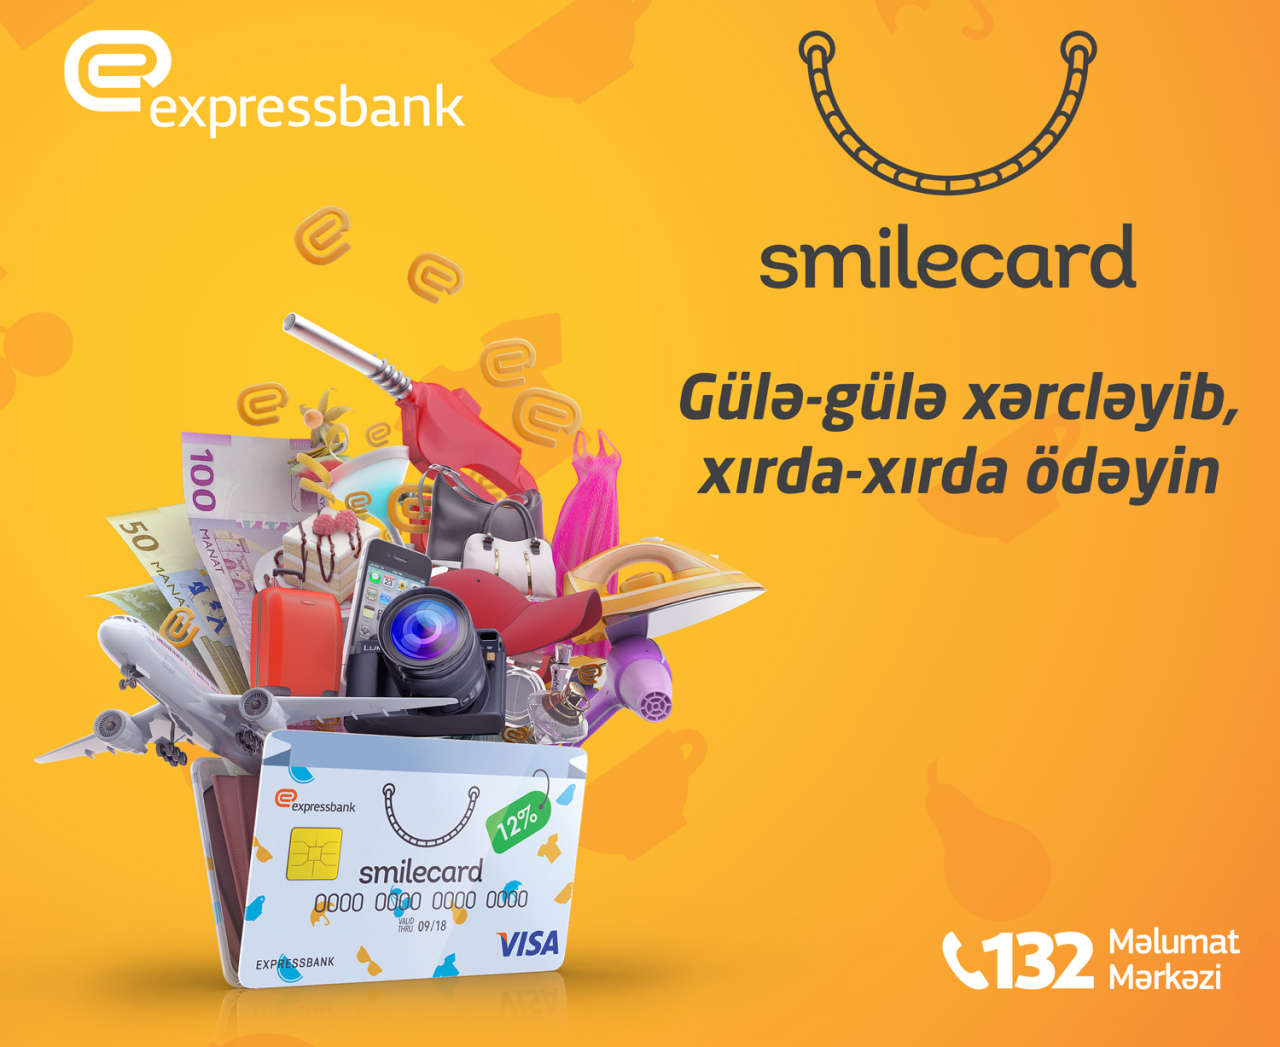 Expressbank SmileCard taksit kartını təklif edir